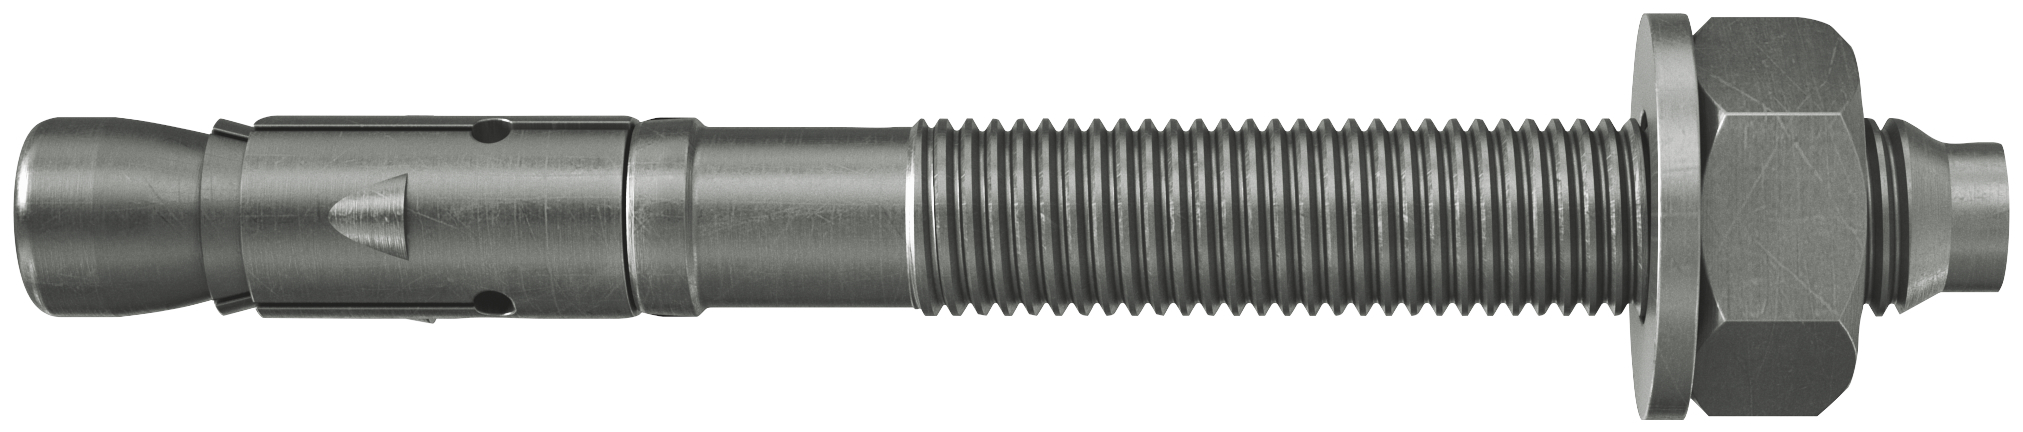 fischer Tassello acciaio FAZ II 10/20 A4 (50 Pz.) L'ancorante ad espansione ad alte prestazioni per carichi statici su calcestruzzo fessurato e per applicazioni sismiche. Versione in acciaio inossidabile con classe di resistenza alla corrosione CRC III..